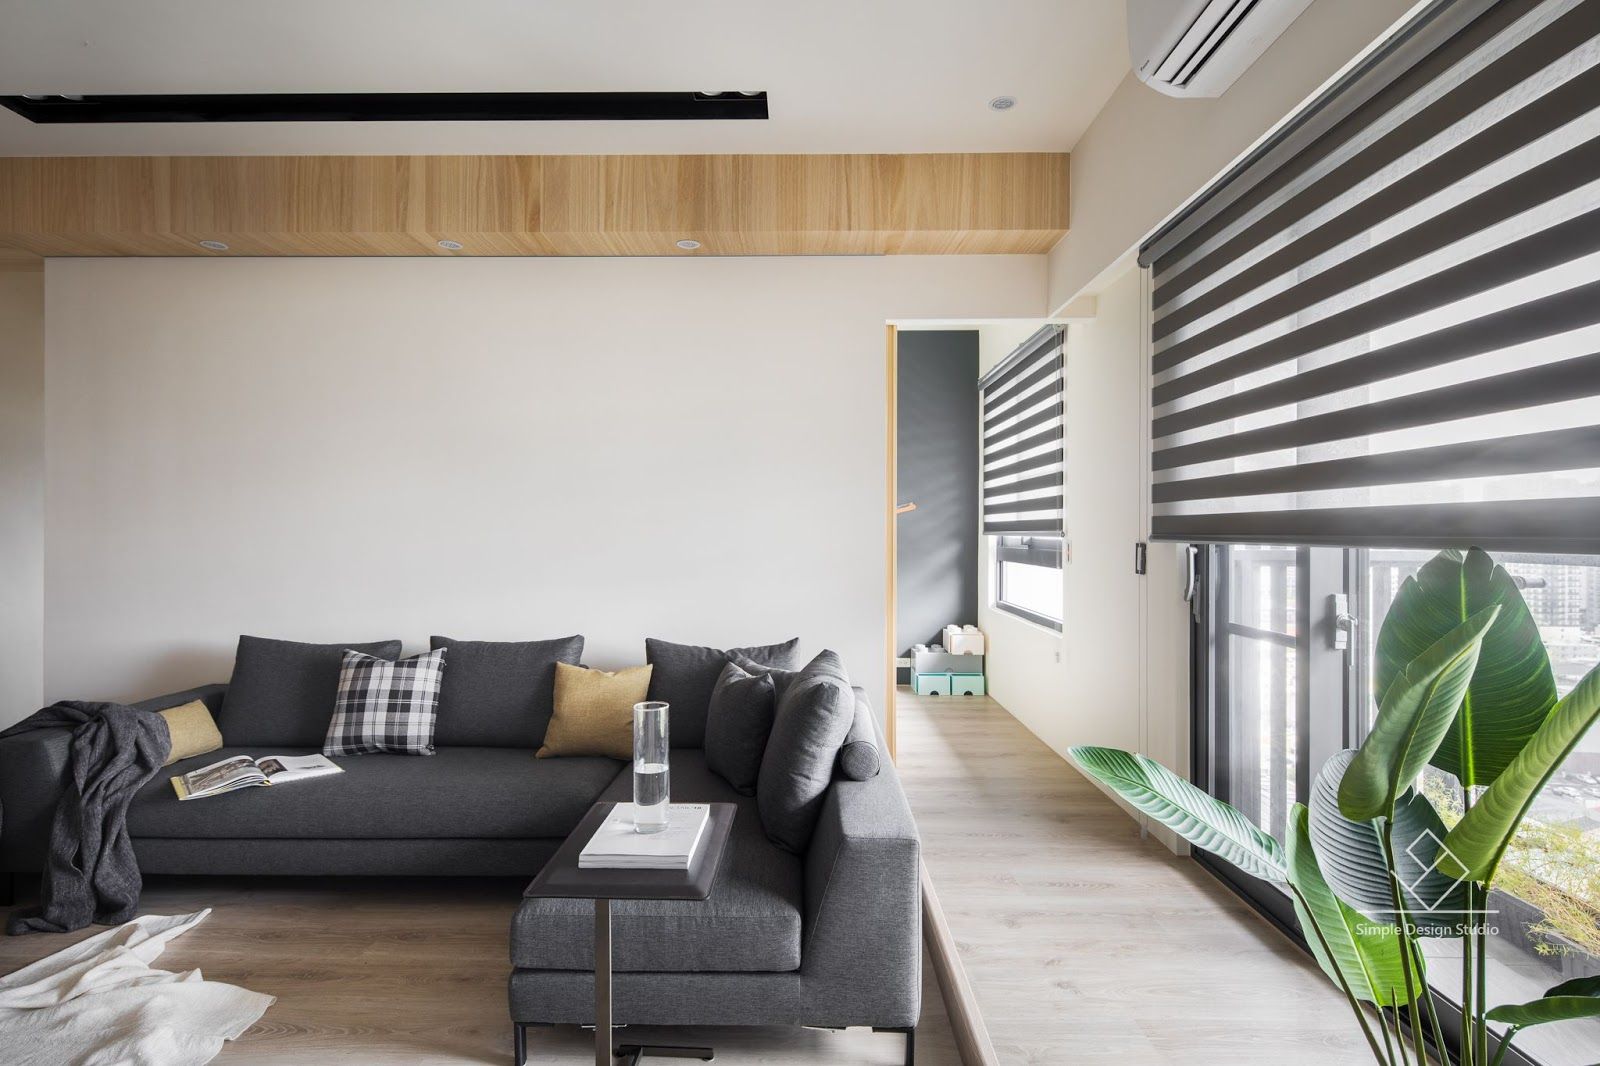 客廳設計 極簡室內設計 Simple Design Studio Living room